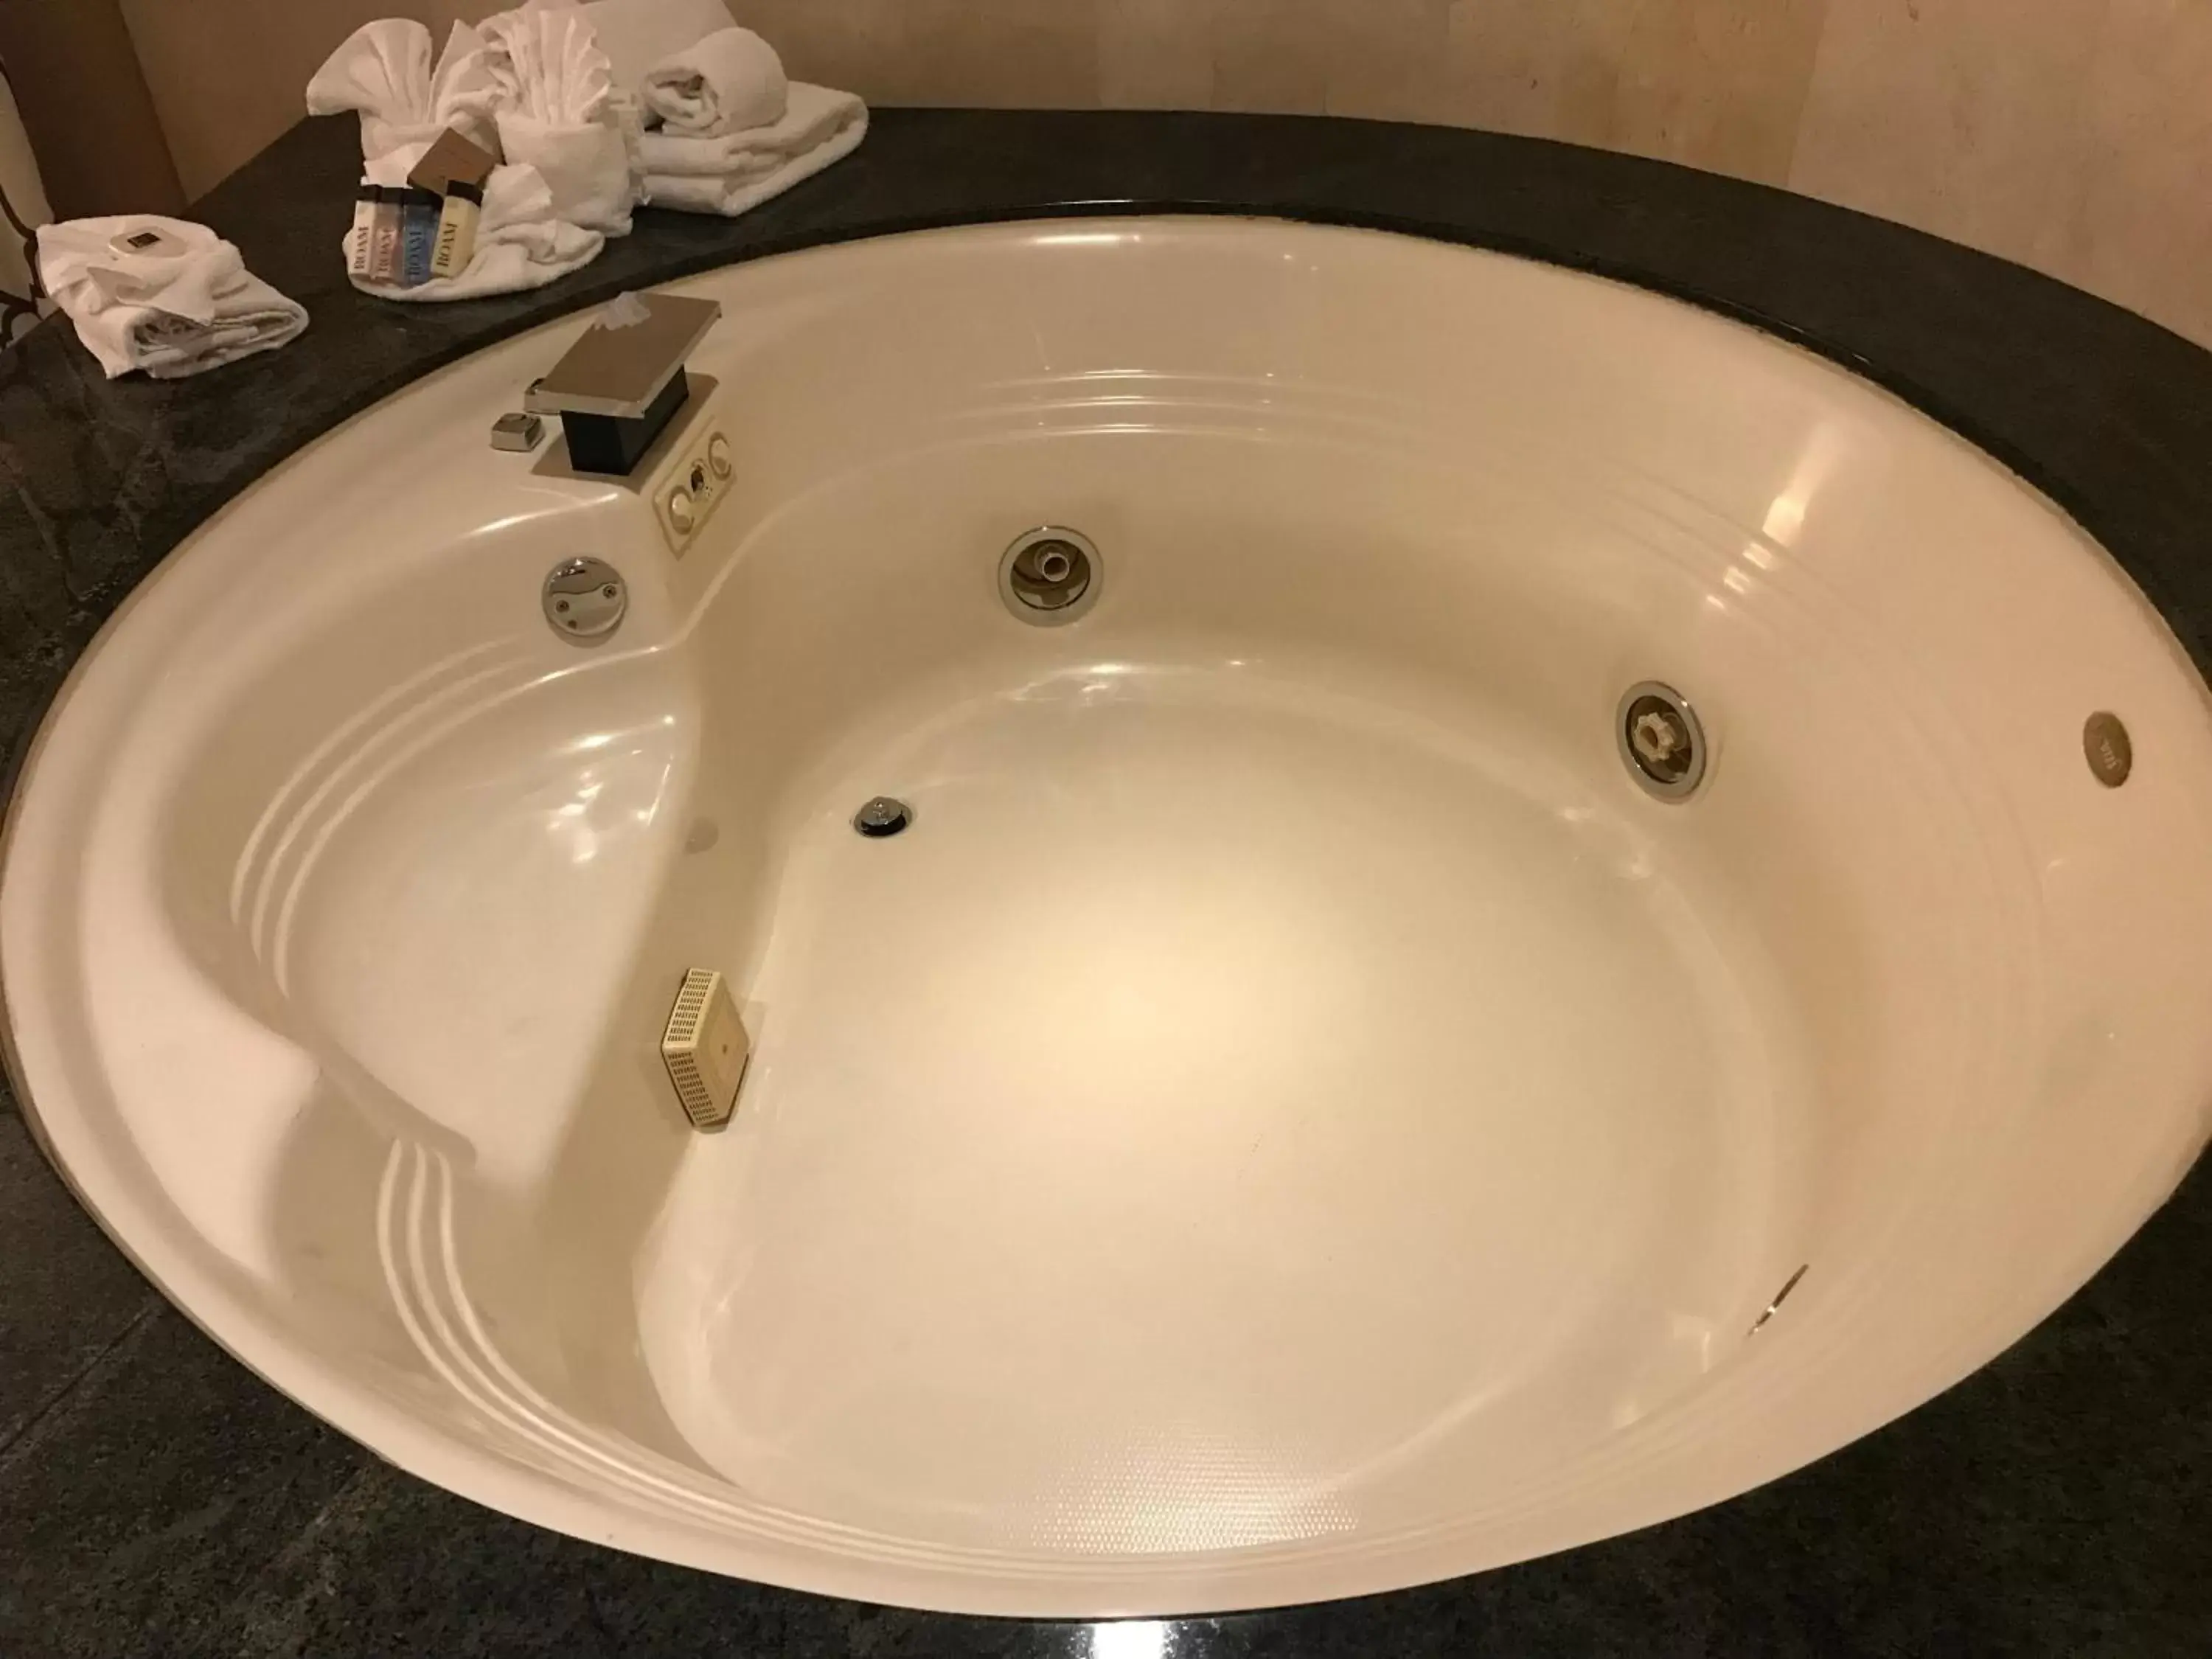 Hot Tub, Bathroom in Hollywood Hotel - The Hotel of Hollywood Near Universal Studios